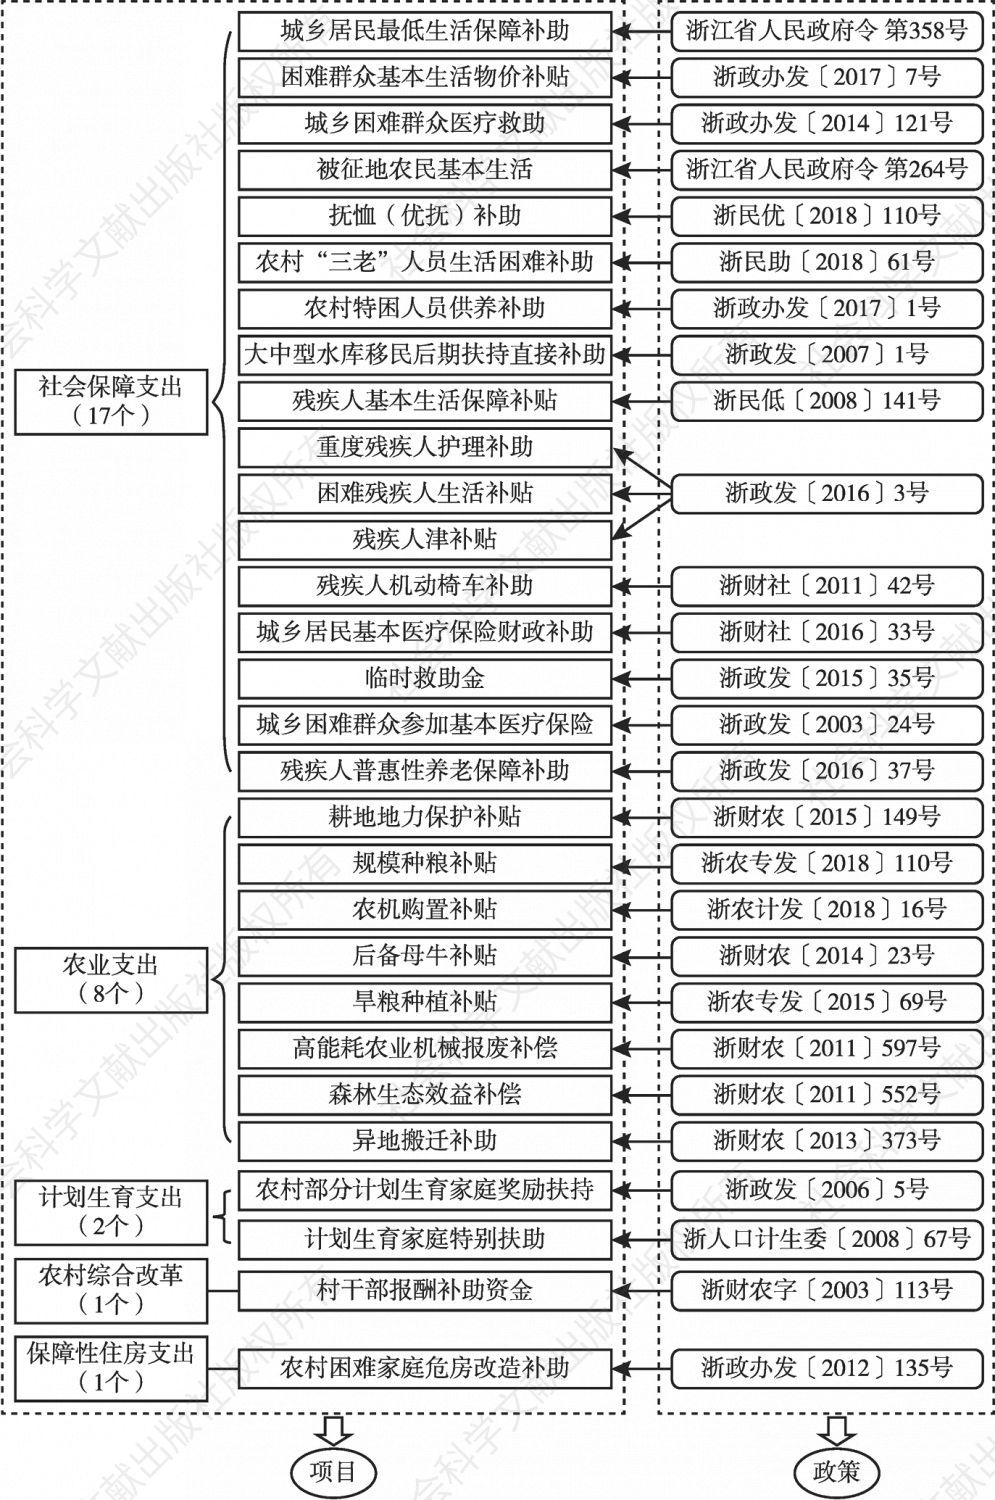 图12 浙江省乡镇公共财政服务平台纳入清单管理的项目与政策